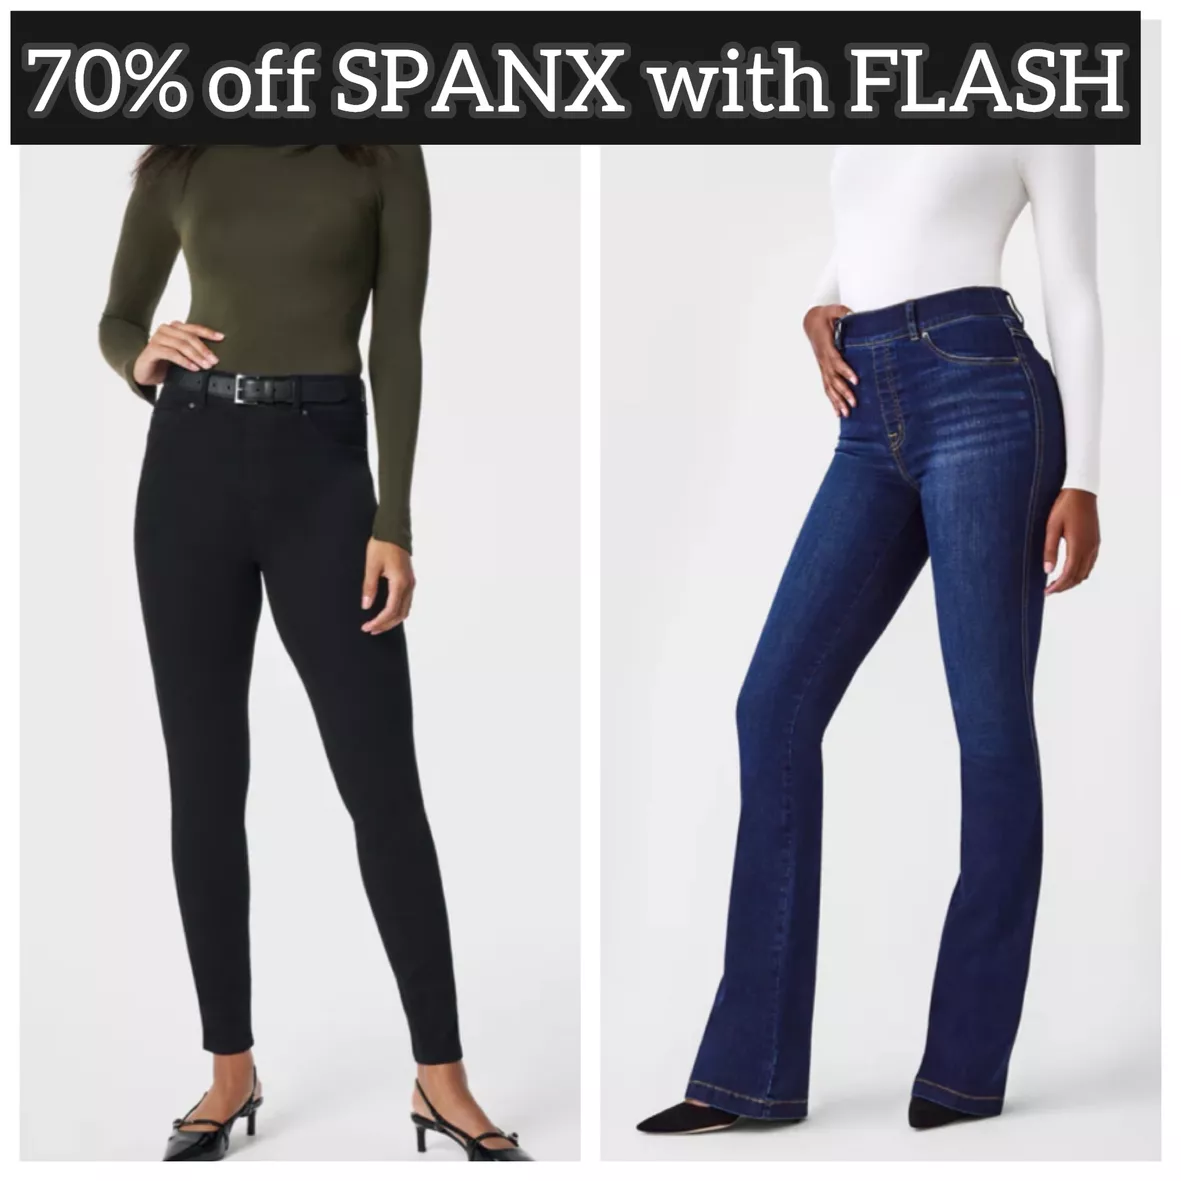 Spanx ankle skinny jeans in black